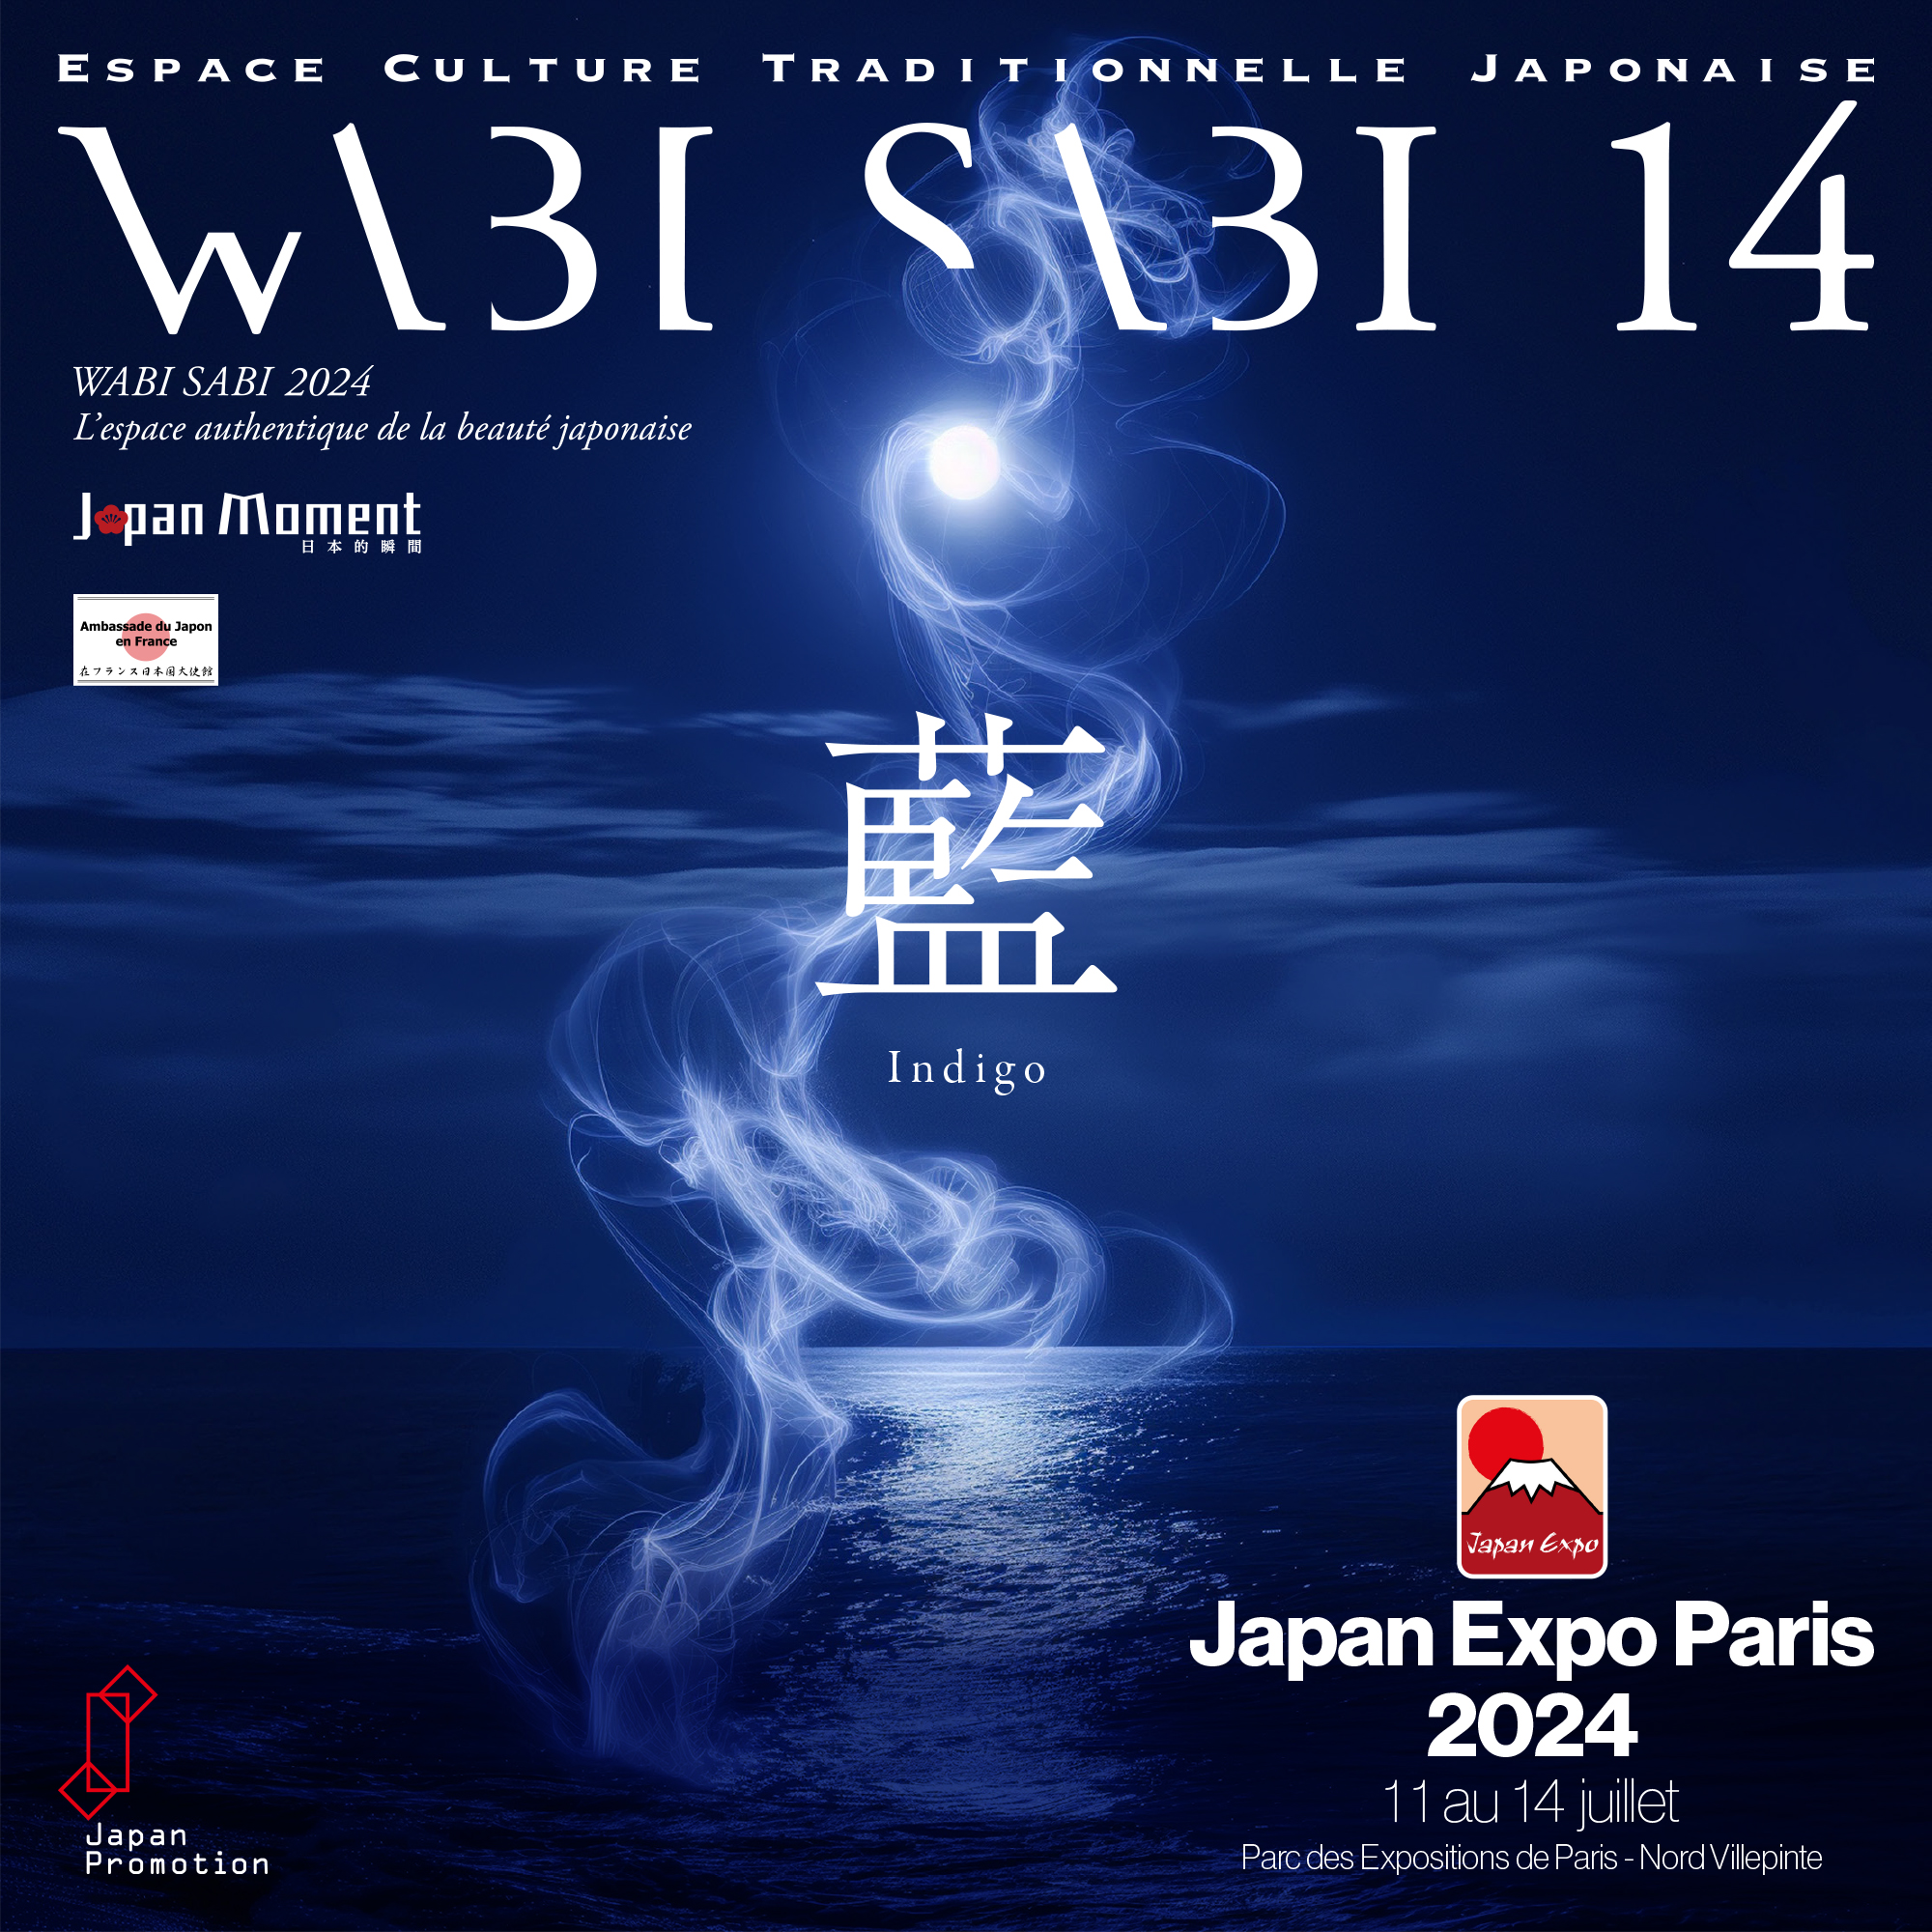 Japan Expo Paris 2024 公式パビリオン「WABI SABI」のテーマ「藍」のビジュアル。月夜の海から竜のような白いモヤが昇っている